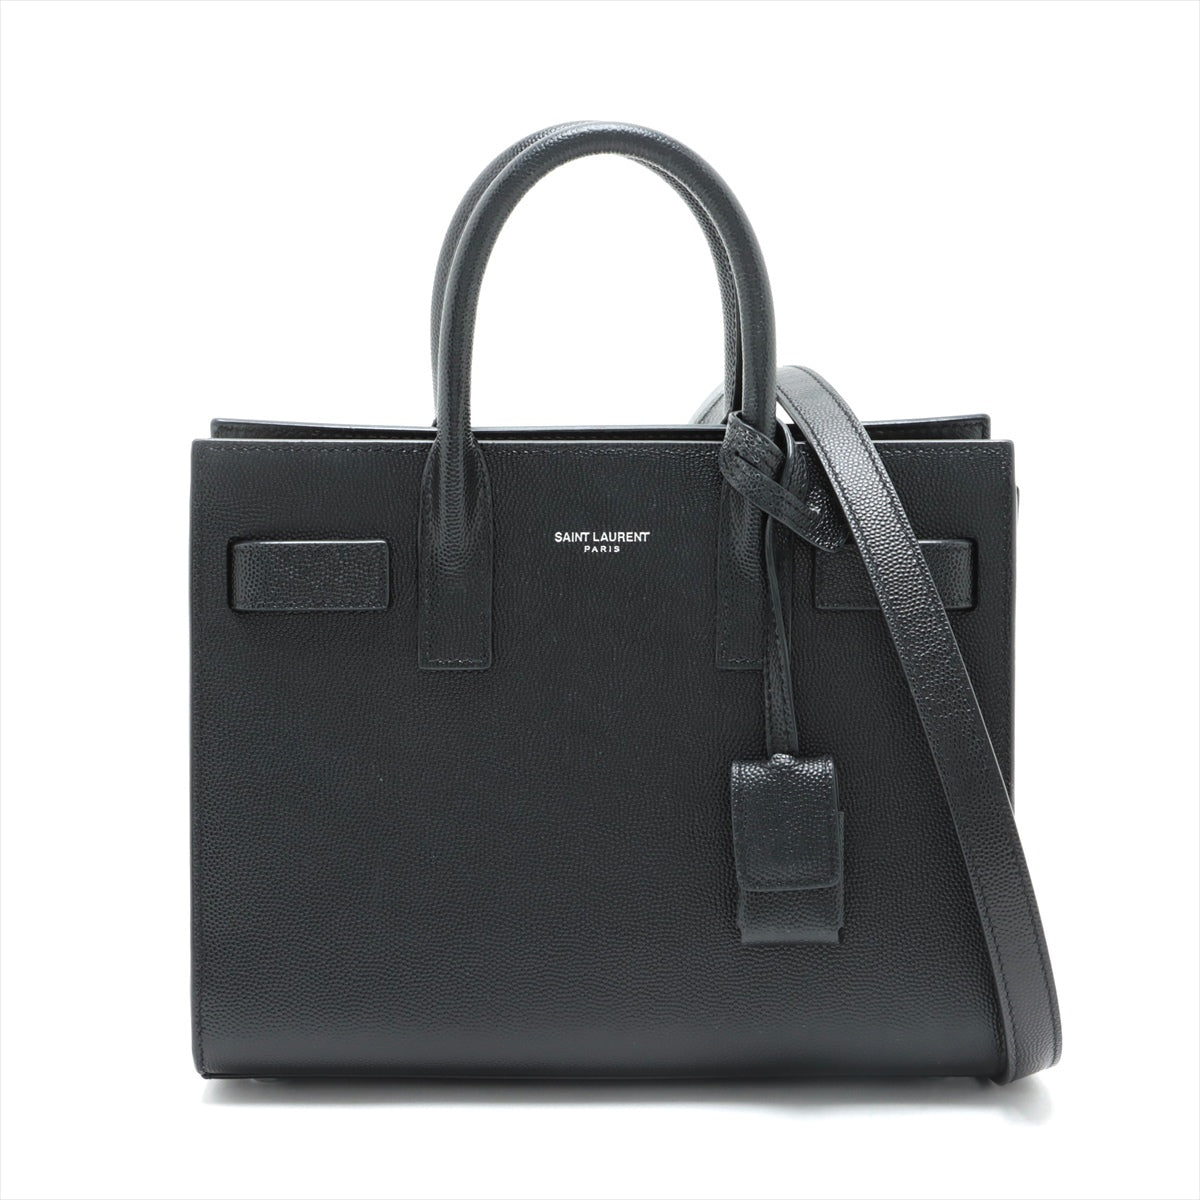 Saint Laurent Paris Sac de Jour Nano Leather 2way handbag Black 392035